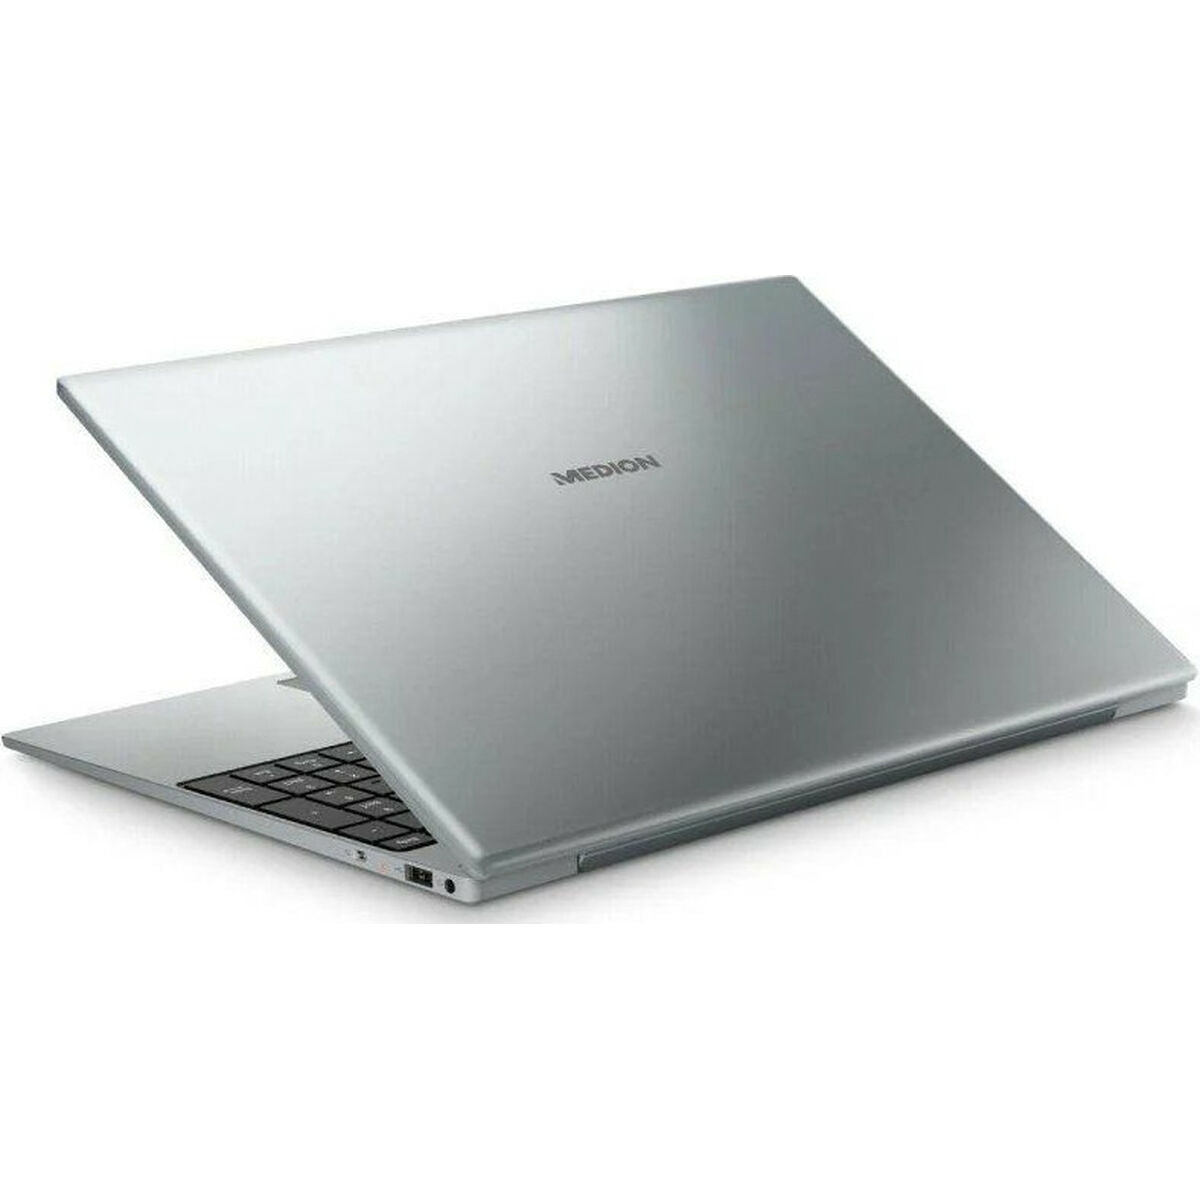 Laptop Medion MD62428 15,6" AMD Ryzen 5 3500U 8 GB RAM 512 GB SSD - CA International 